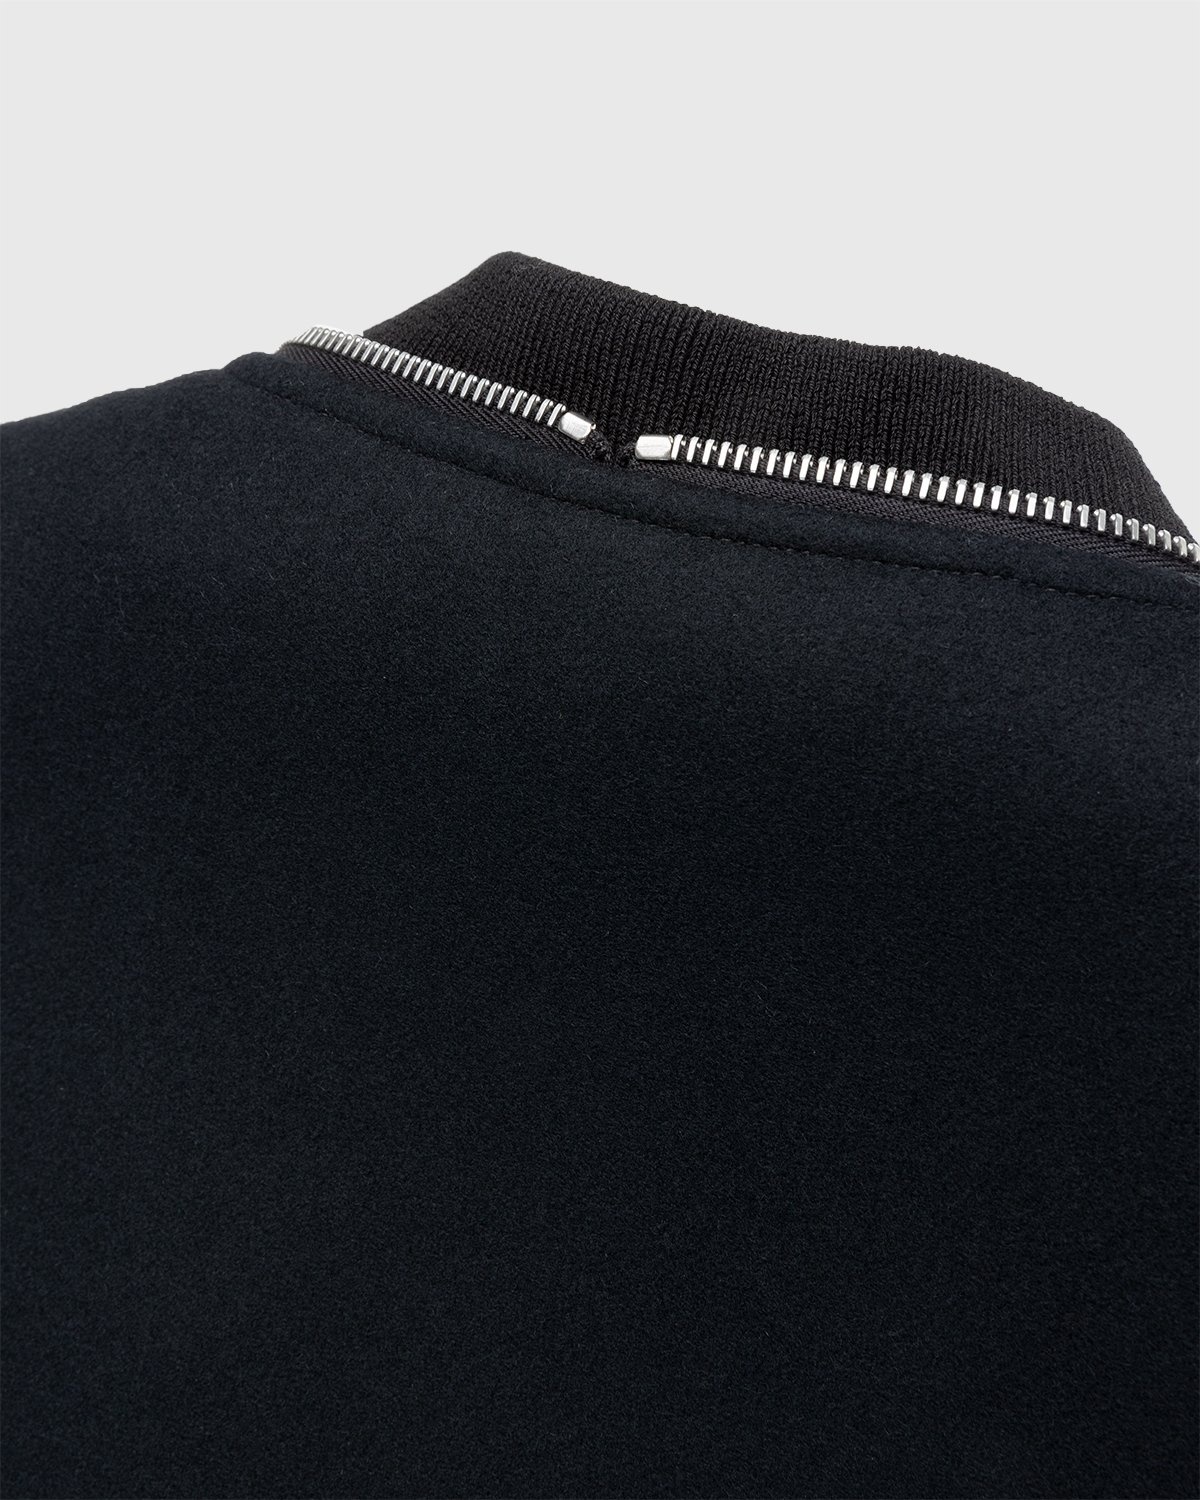 Jil Sander – Blouson Black - Outerwear - Black - Image 7